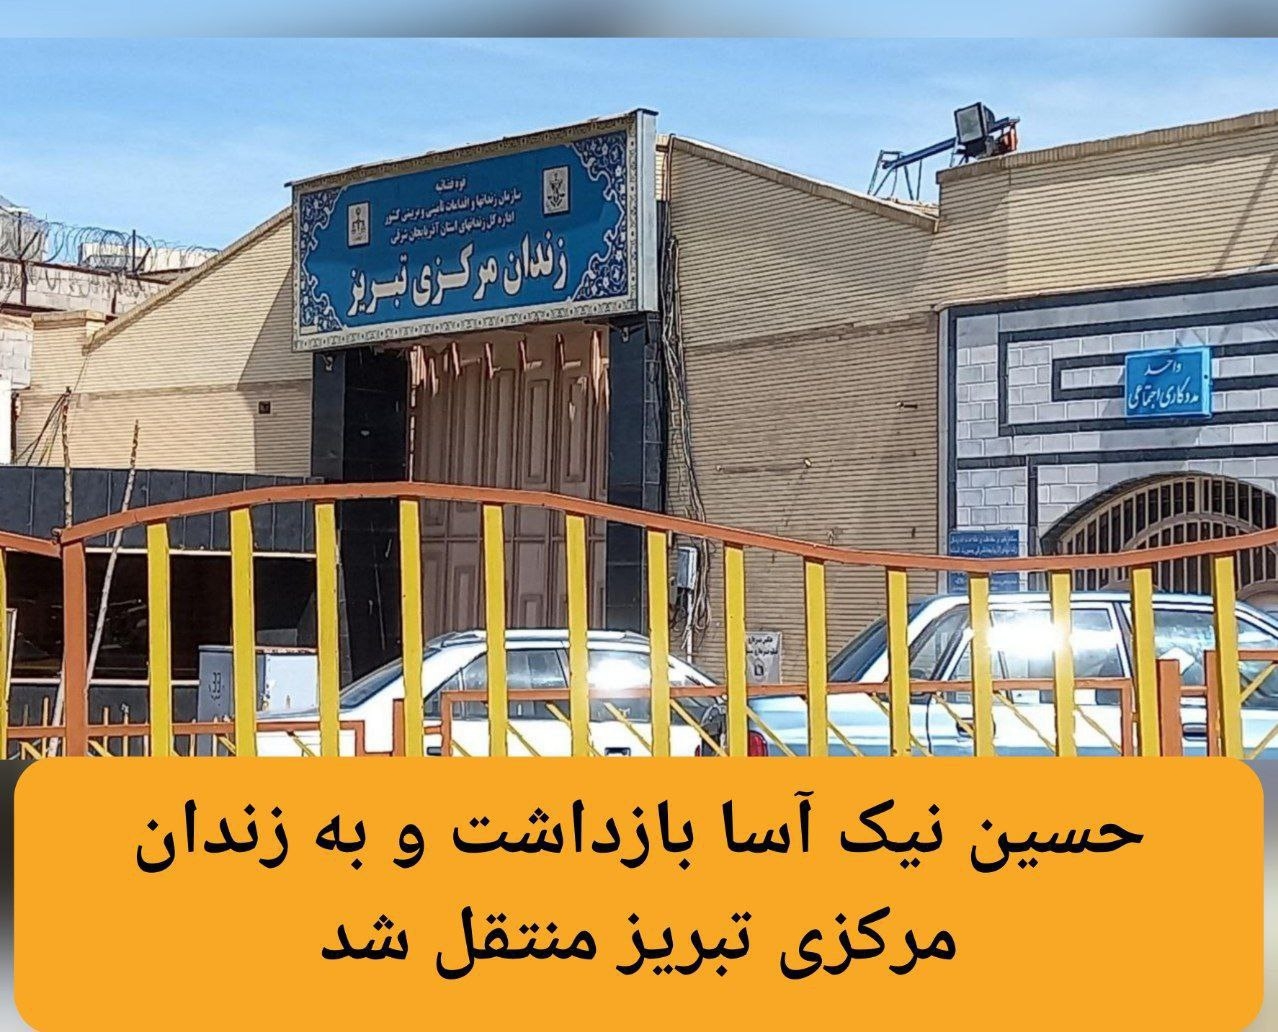 حسین نیک آسا بازداشت و به زندان مرکزی تبریز منتقل شد